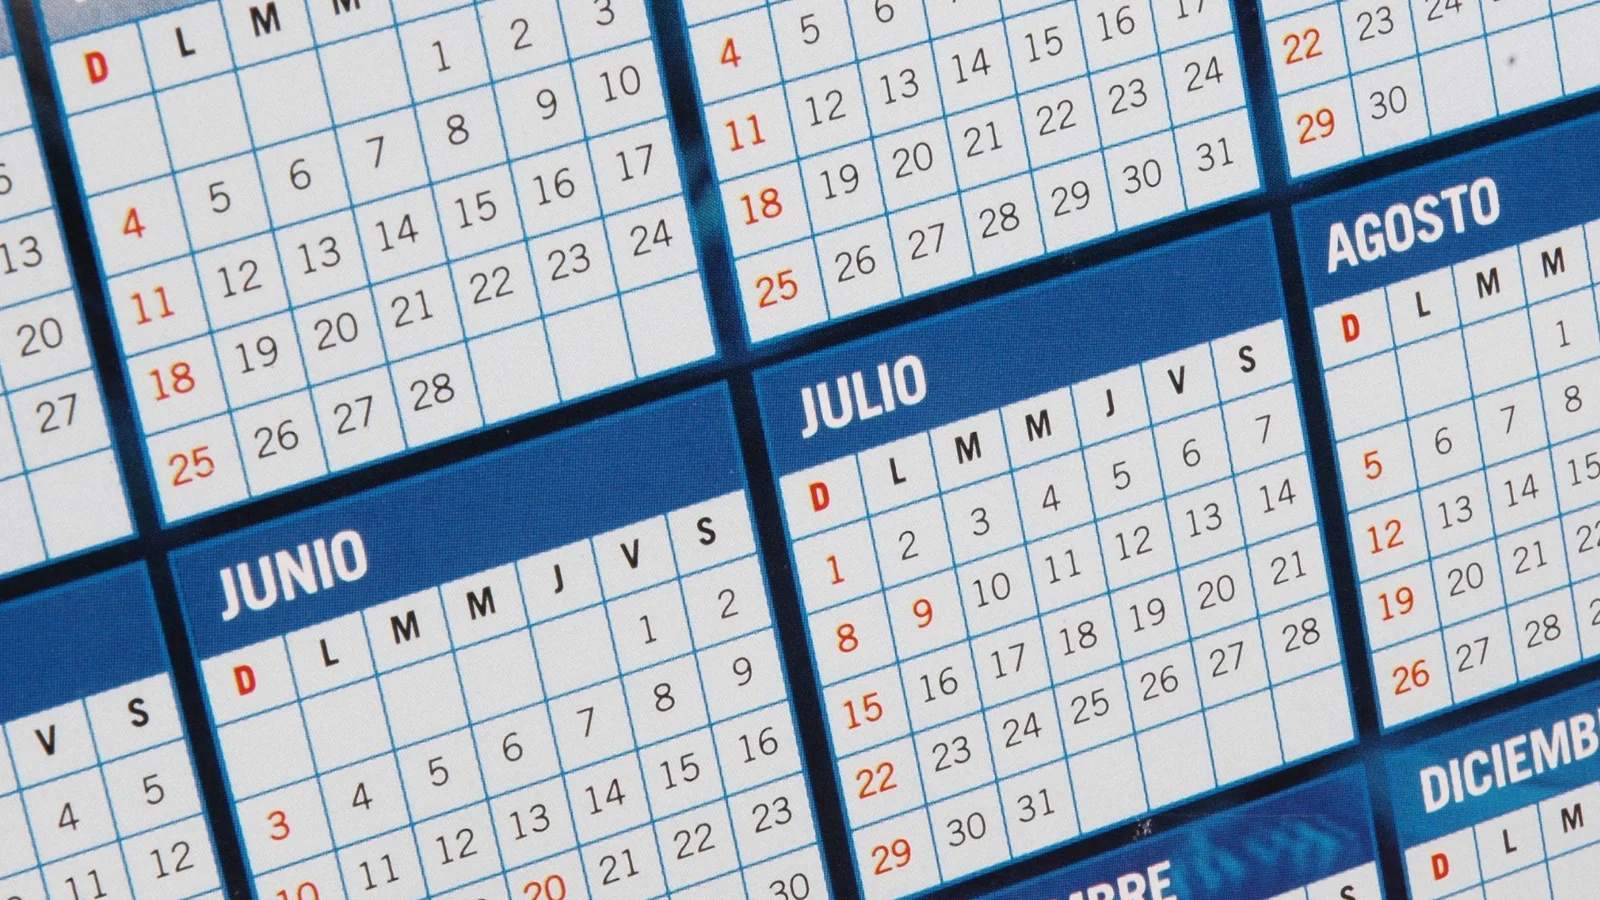 Calendario Laboral para el próximo Año 2.025 en Castilla la Mancha